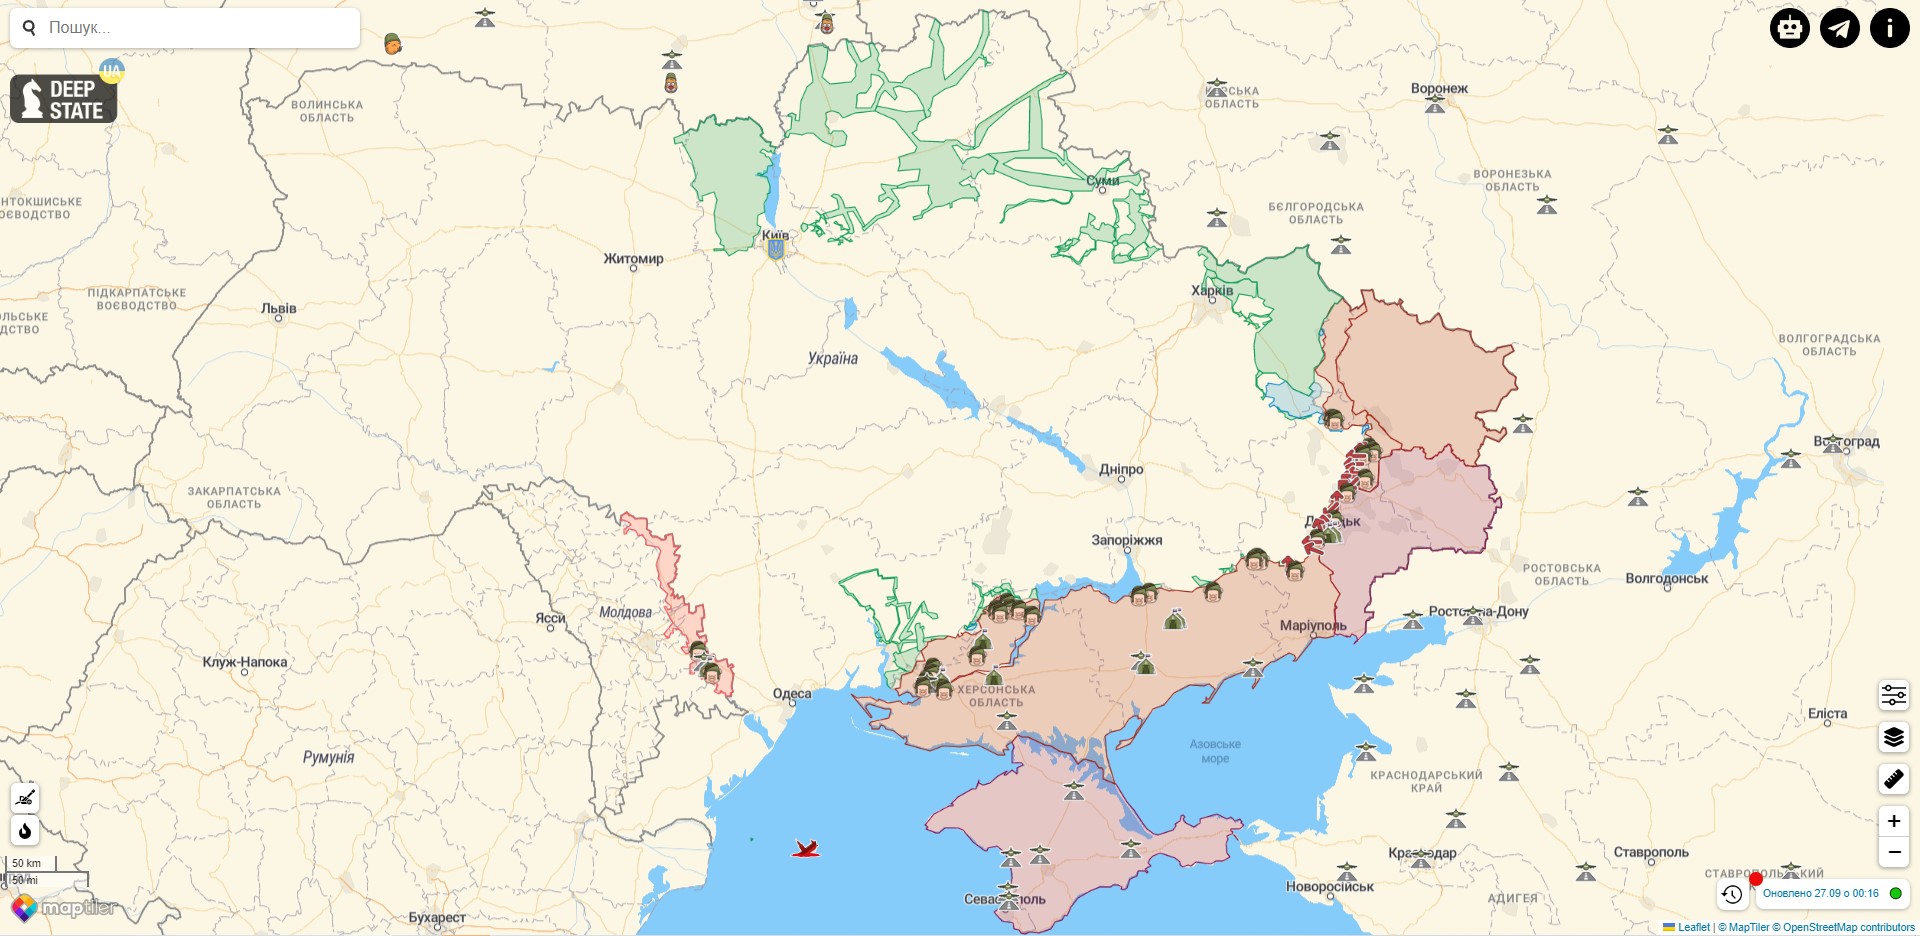 Боевые действия в Украине против РФ на 27 сентября